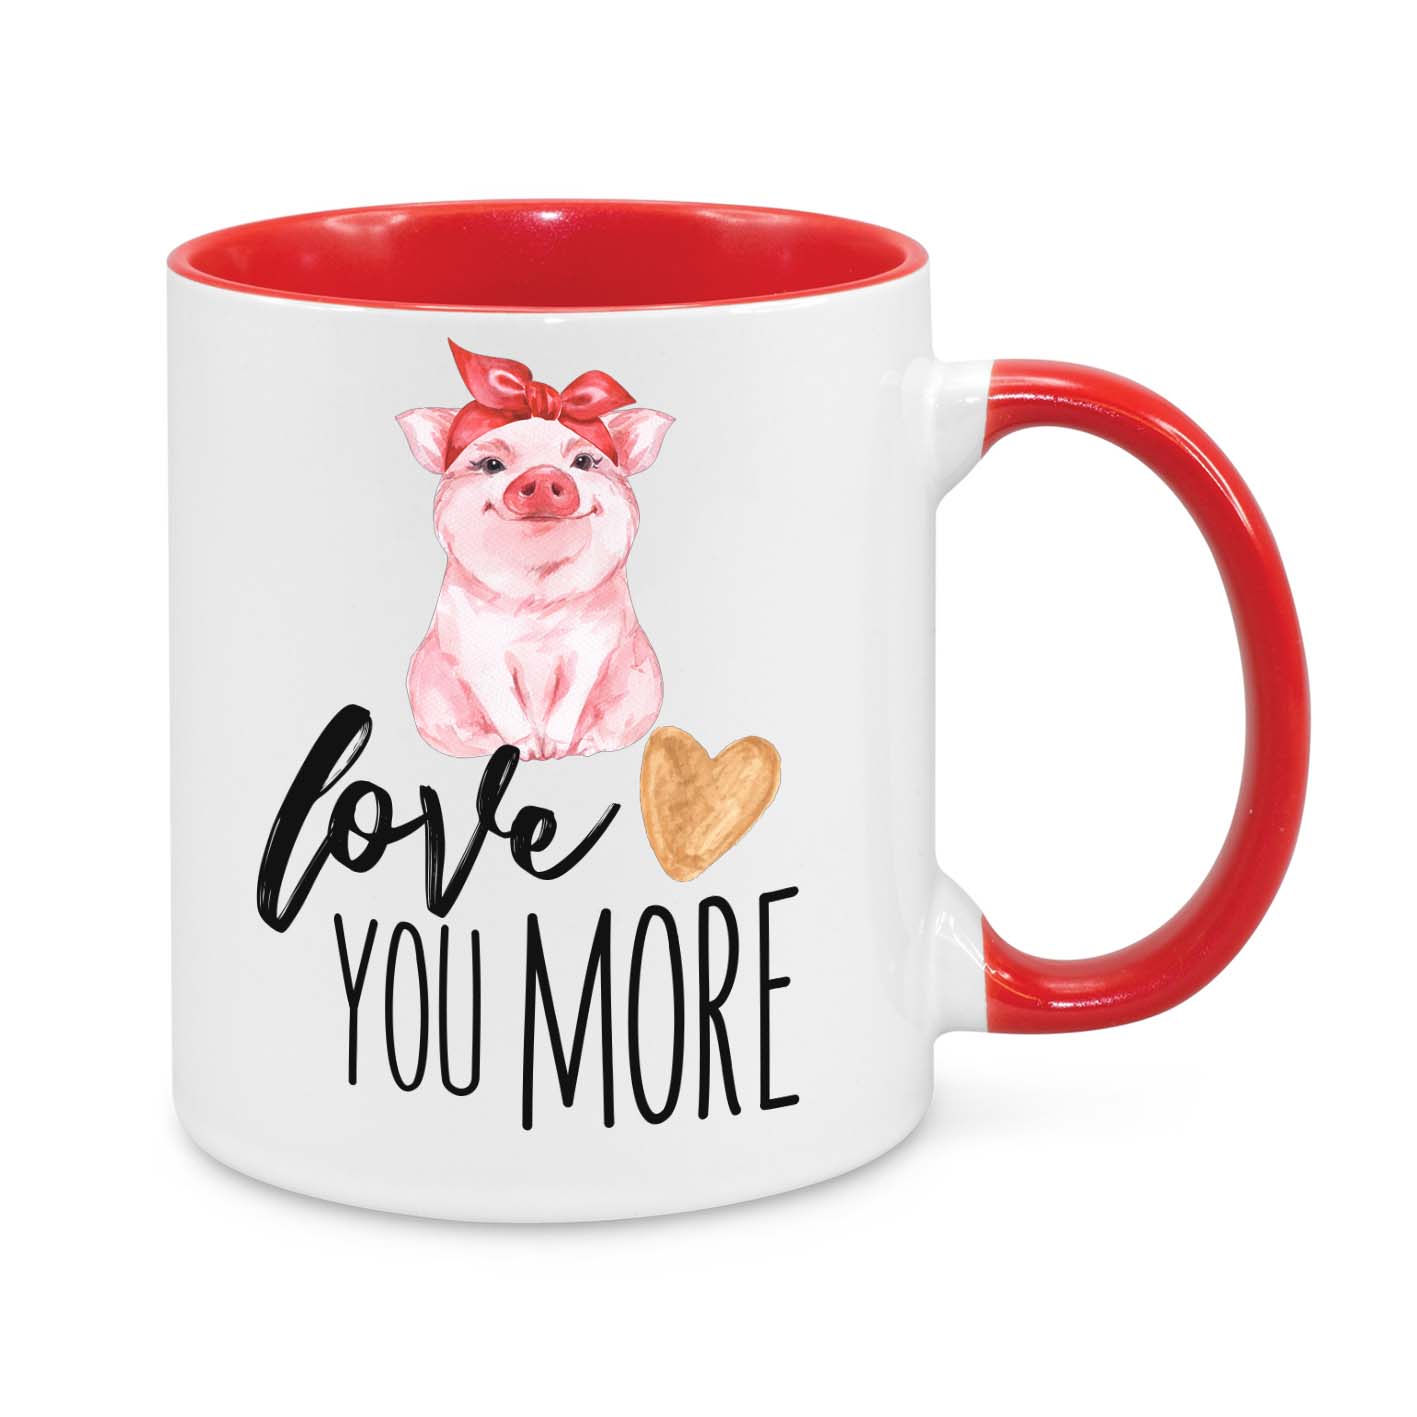 Love You More Novelty Mug